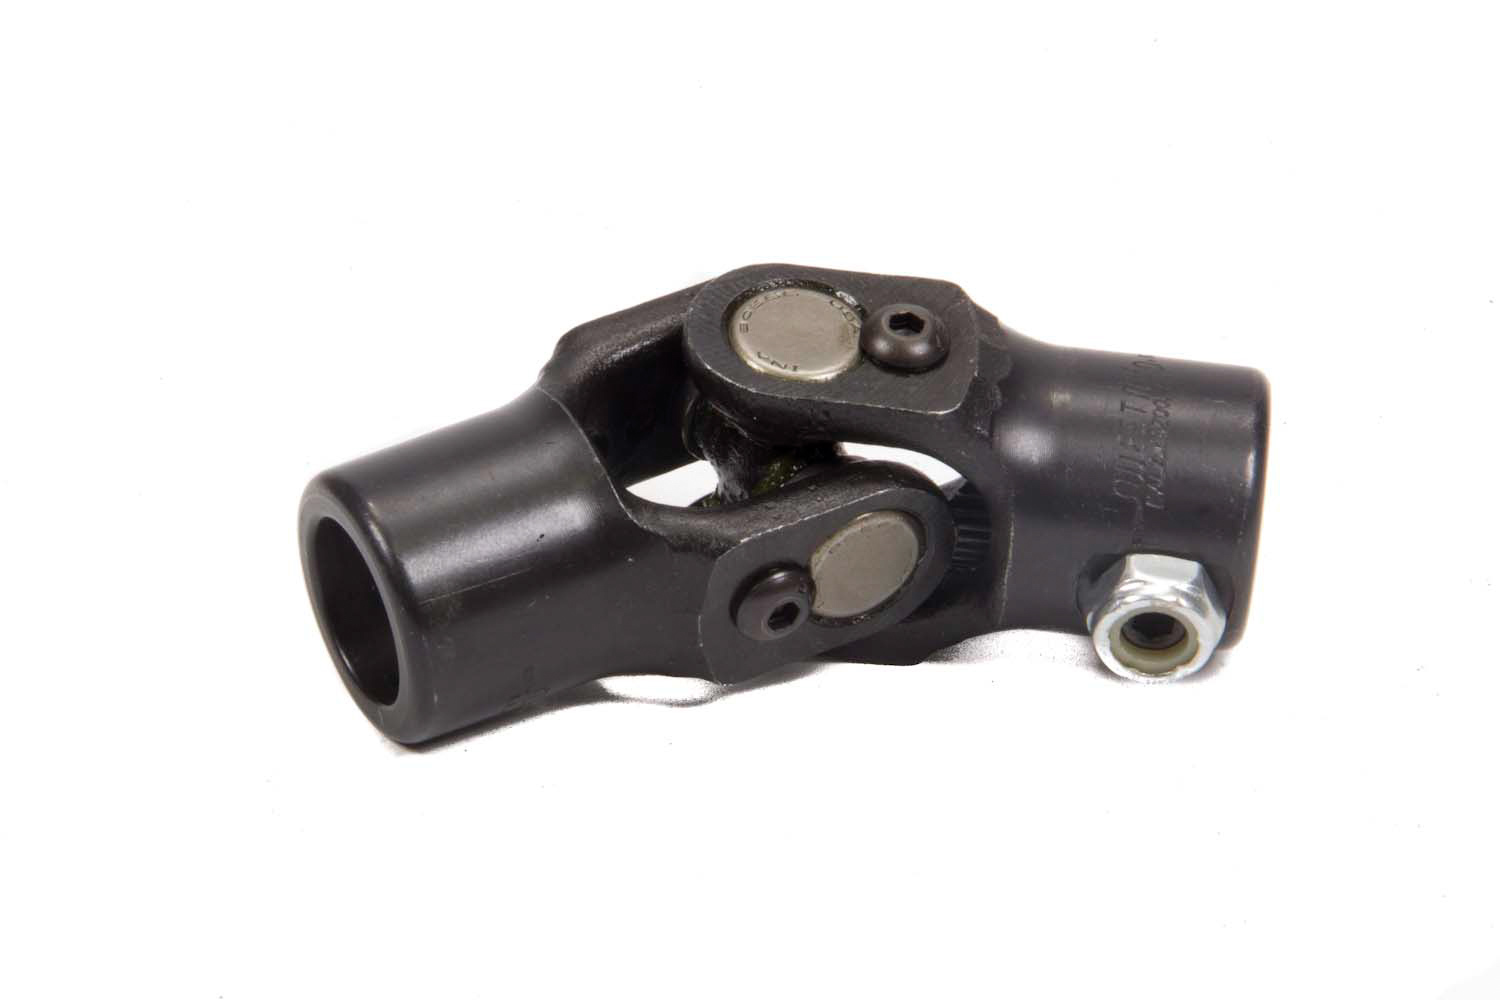 Steering Universal Joint - Single Joint - 3/4 in 48 Spline to 3/4 in 48 Spline - Steel - Black Paint - Each